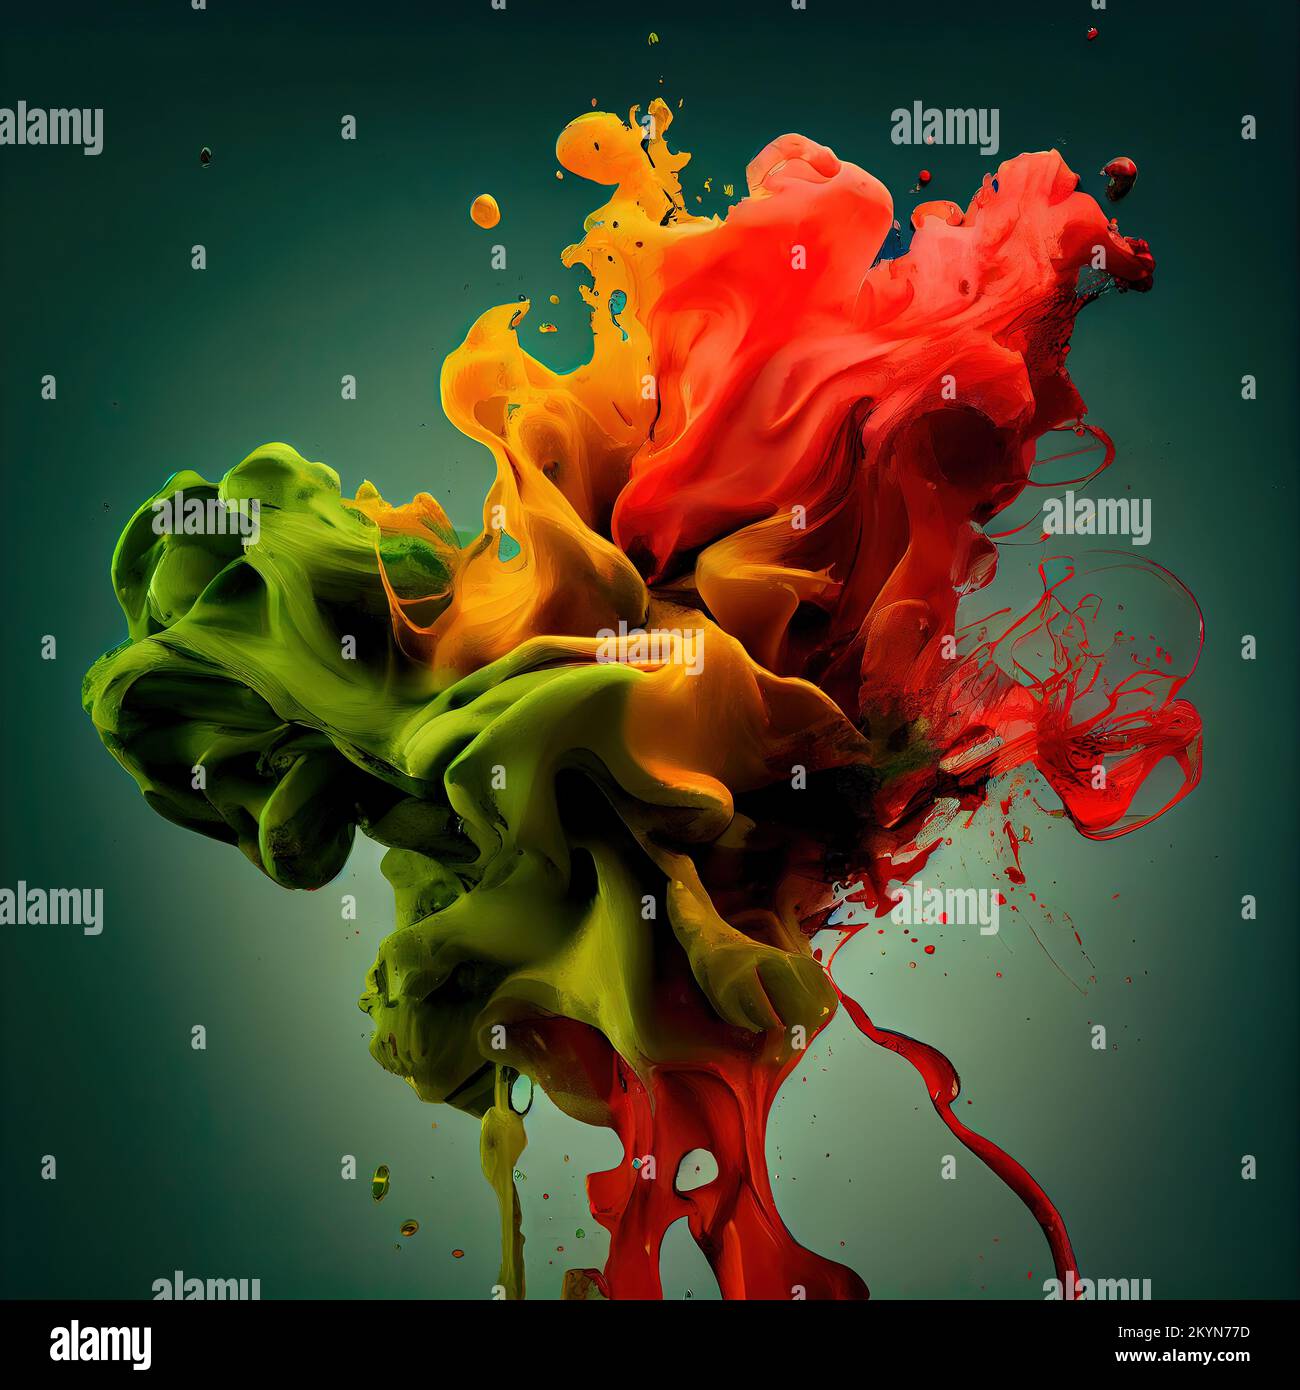 Chaos-Konzept. Abbildung einer Tinte in Wasser mit gelben, orangefarbenen und grünen Farben auf einem nahtlosen grünen Hintergrund. Stockfoto